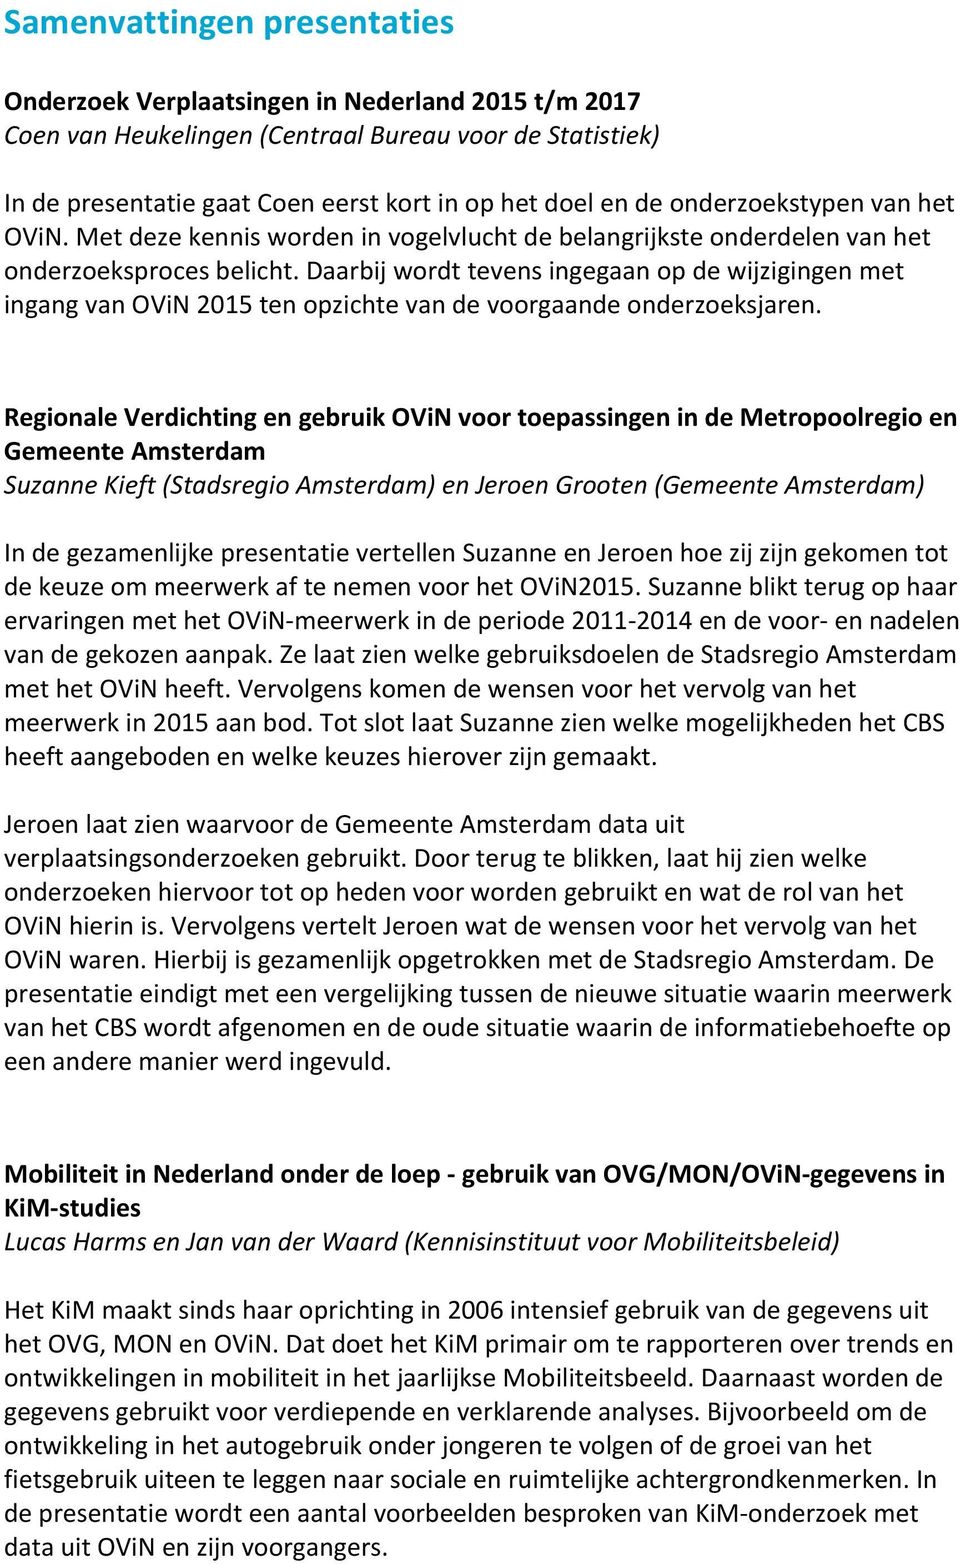 RegionaleVerdichtingengebruikOViNvoortoepassingenindeMetropoolregioen GemeenteAmsterdam SuzanneKieft(StadsregioAmsterdam)enJeroenGrooten(GemeenteAmsterdam)